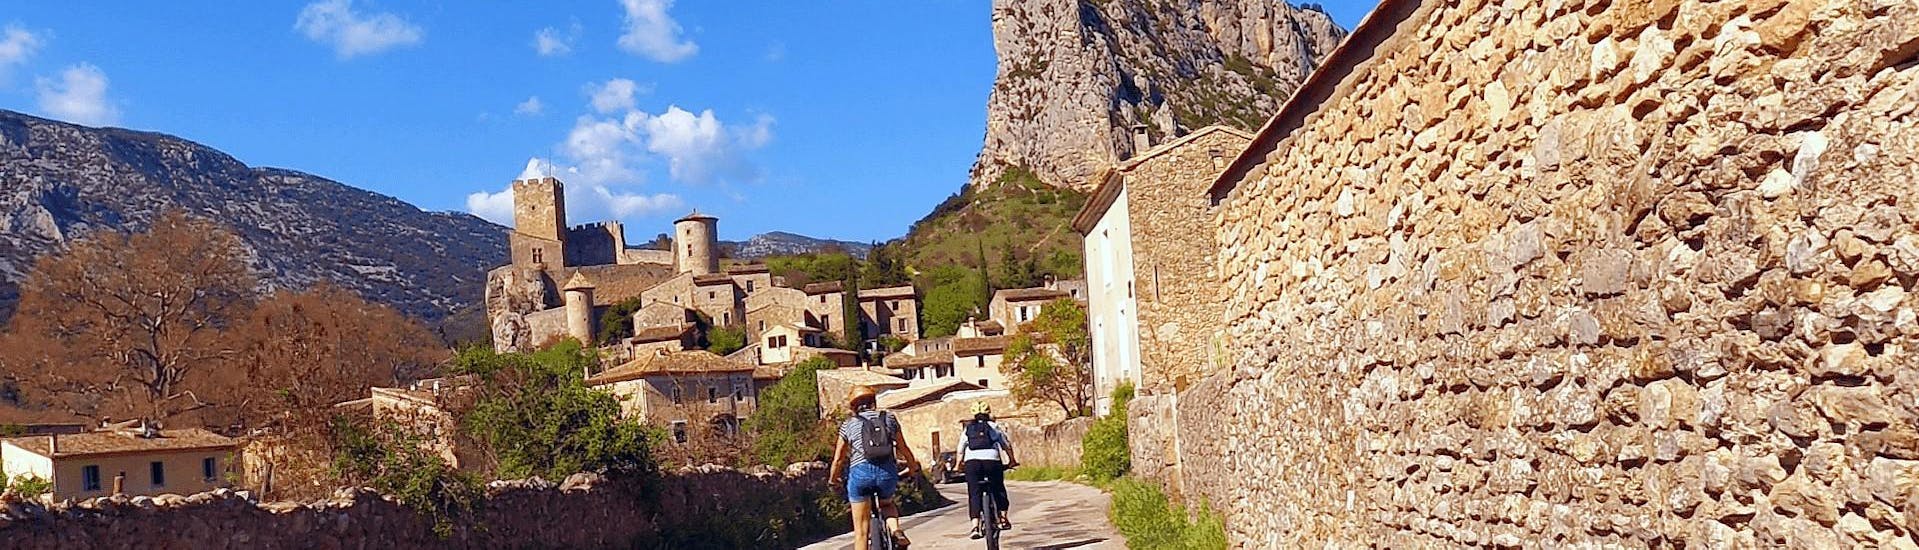 Deux touristes reviennent au village de Saint-Jean-de-Buèges grâce à la Location de VTT suspendu de Le Garrel Hérault.